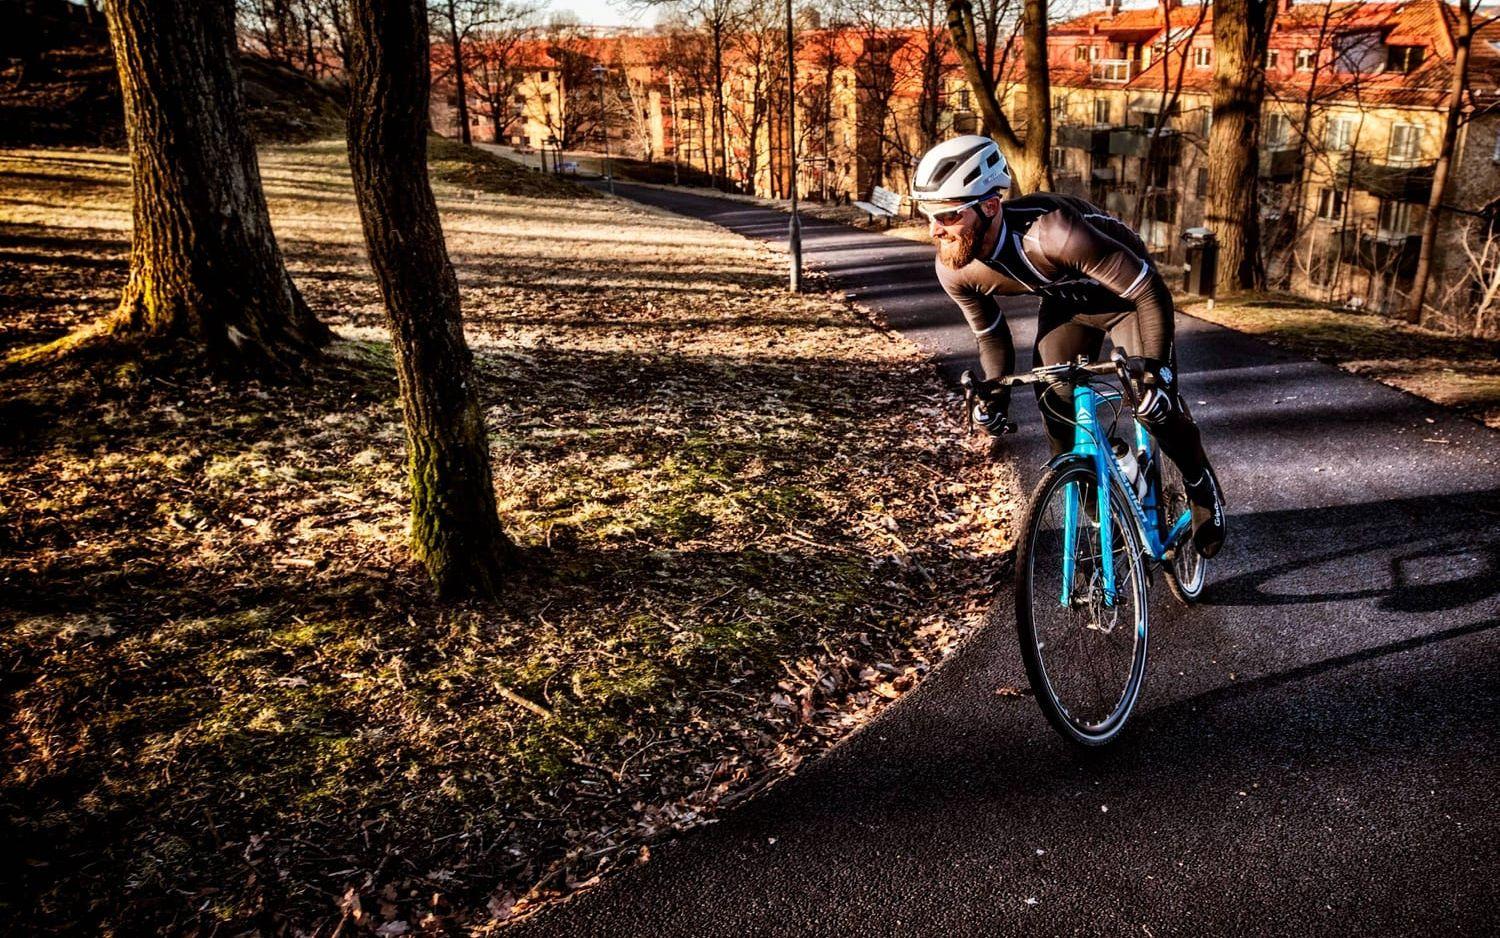 Vill man komma igång med cykling finns det få saker som kan matcha Göteborgsgirot. Här är banan inspirerande och distansen klart överkomlig. Tar man det bara lugnt klarar vem som helst distansen på 70 kilometer, menar ambassadören Jim Berg. Bild: Nicklas Elmrin